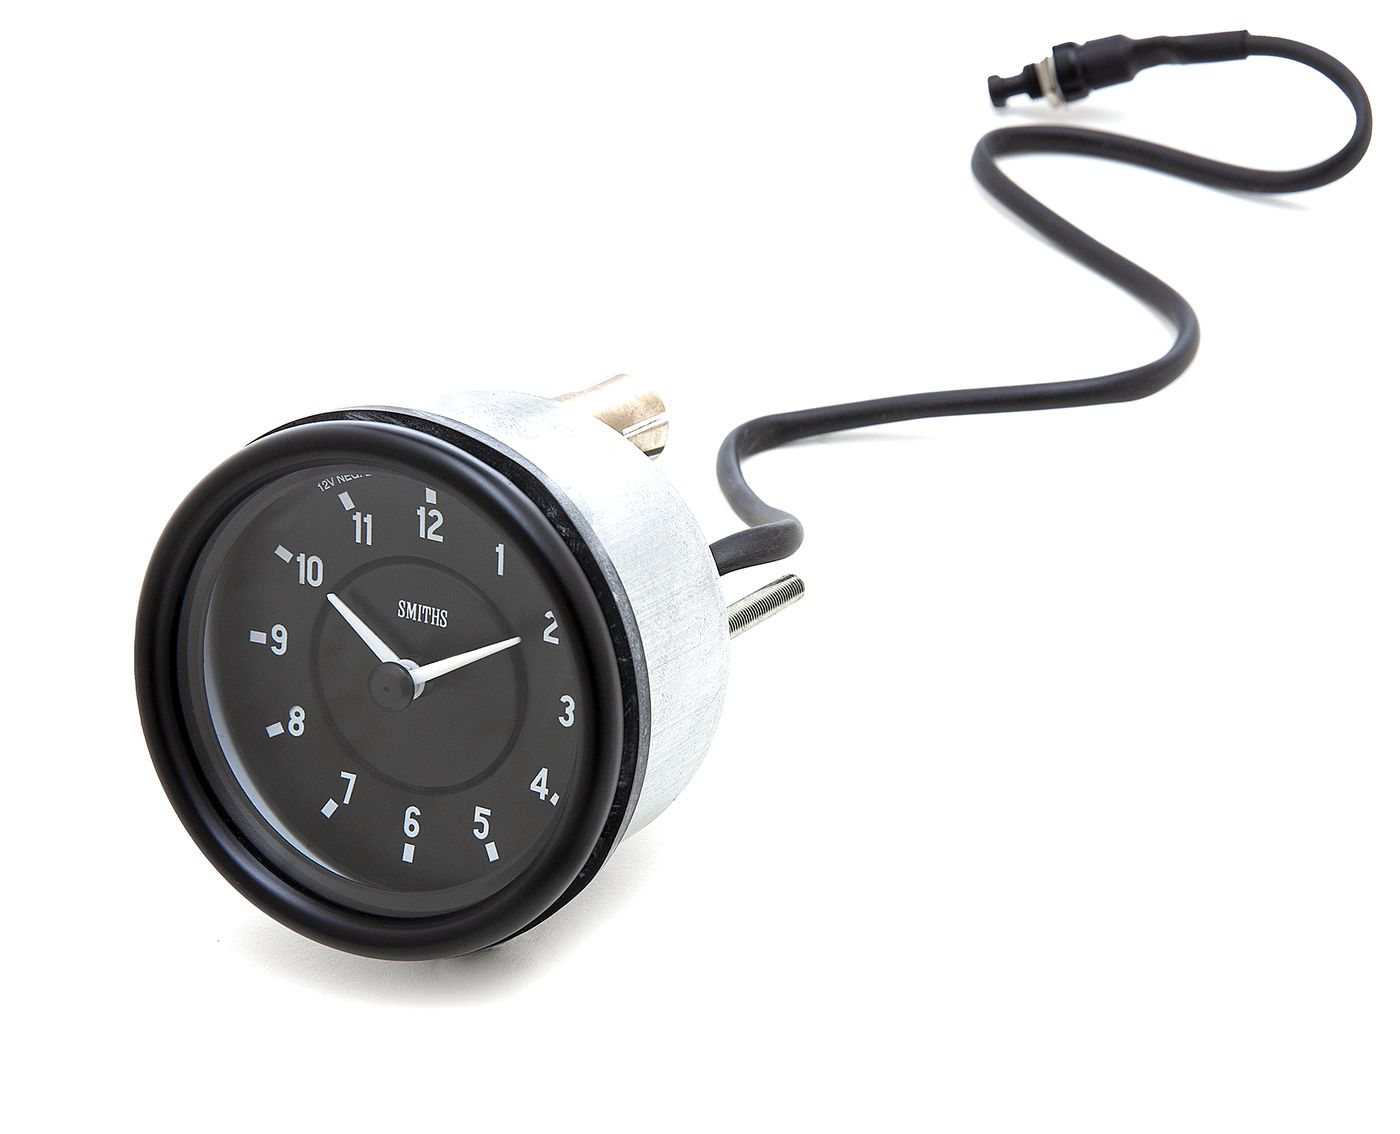 Zeituhr
Clock
Horloge
Zegar analogowy
Reloj
Orologio
Relógio